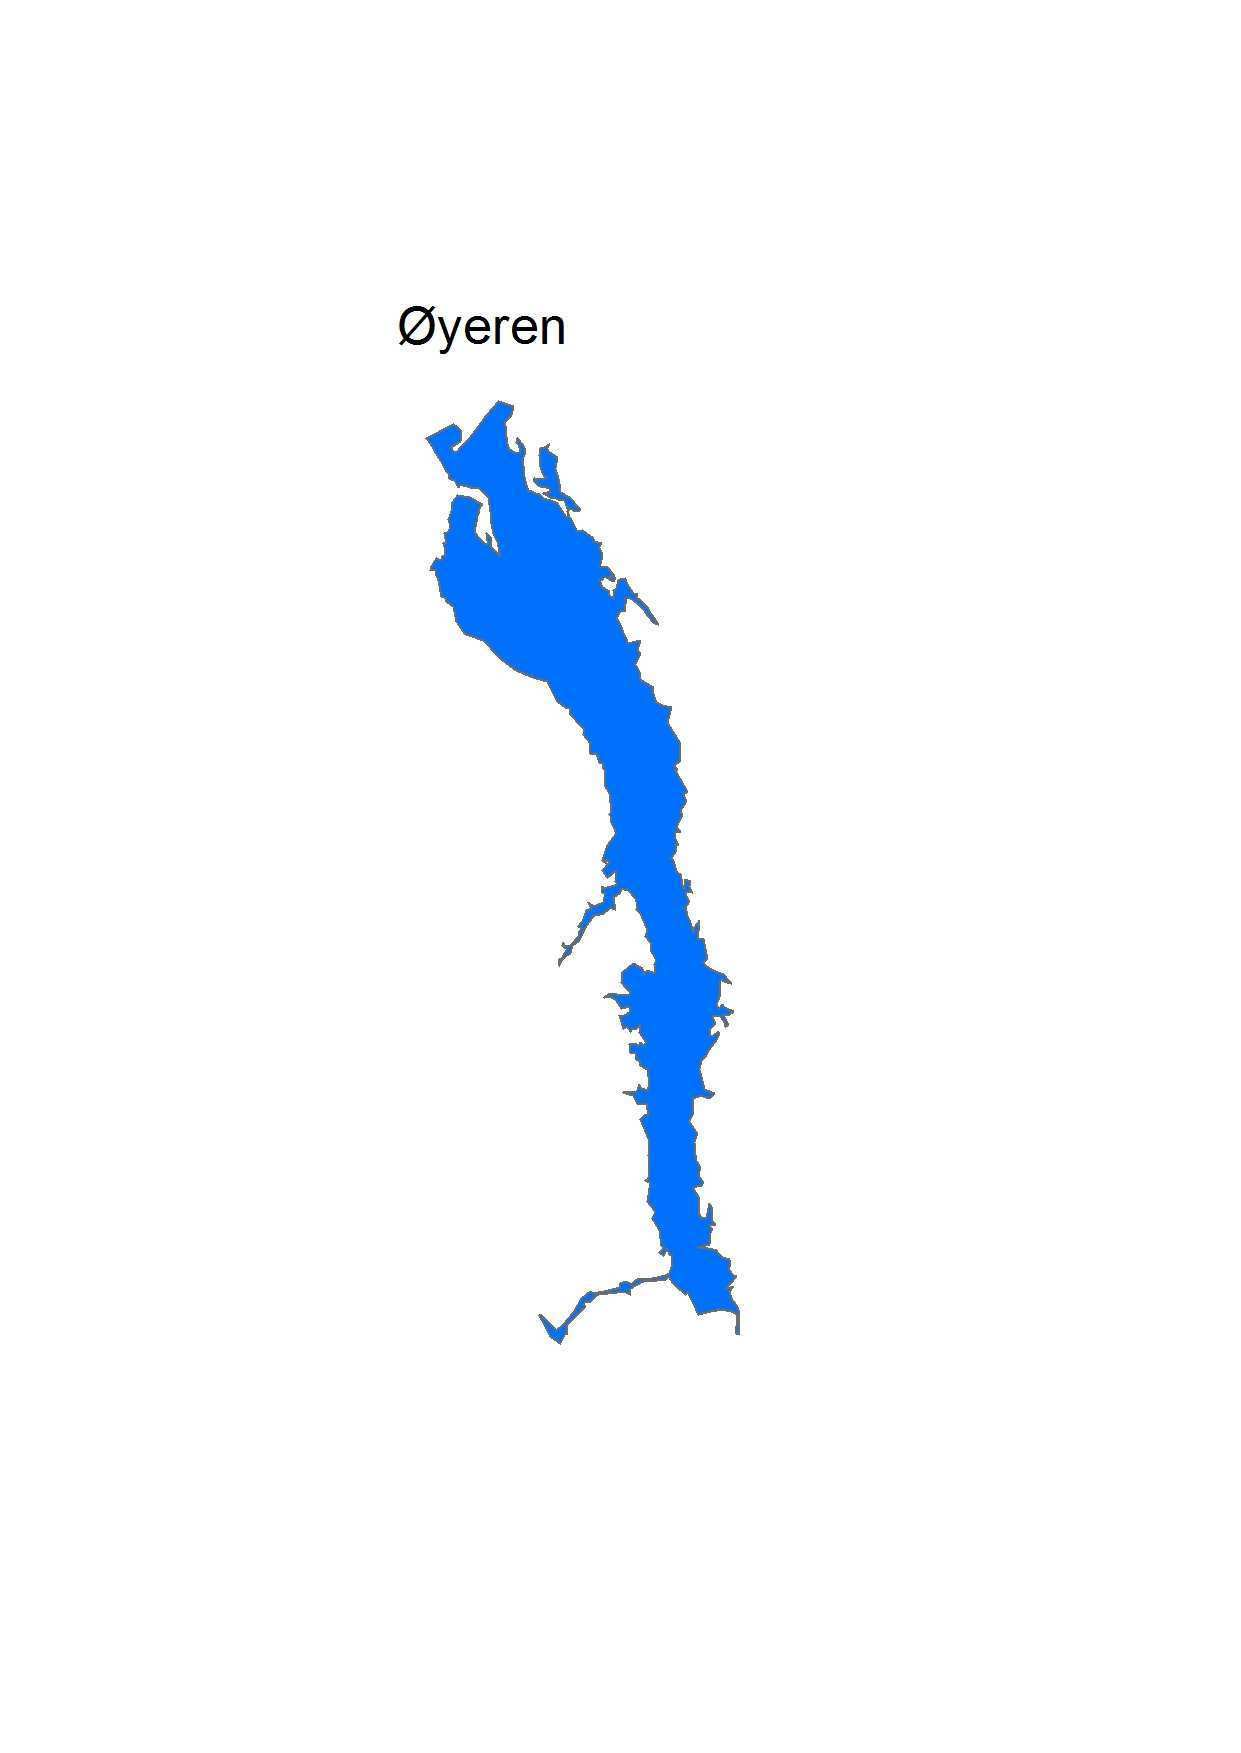 Figur 1. Kart over vannregion Glomma og Øyerens samt plassering i denne. Kilde kart over vannregion Glomma (Østfold fylkeskommune 2010). Tabell 1. Nøkkeltall for Øyeren.